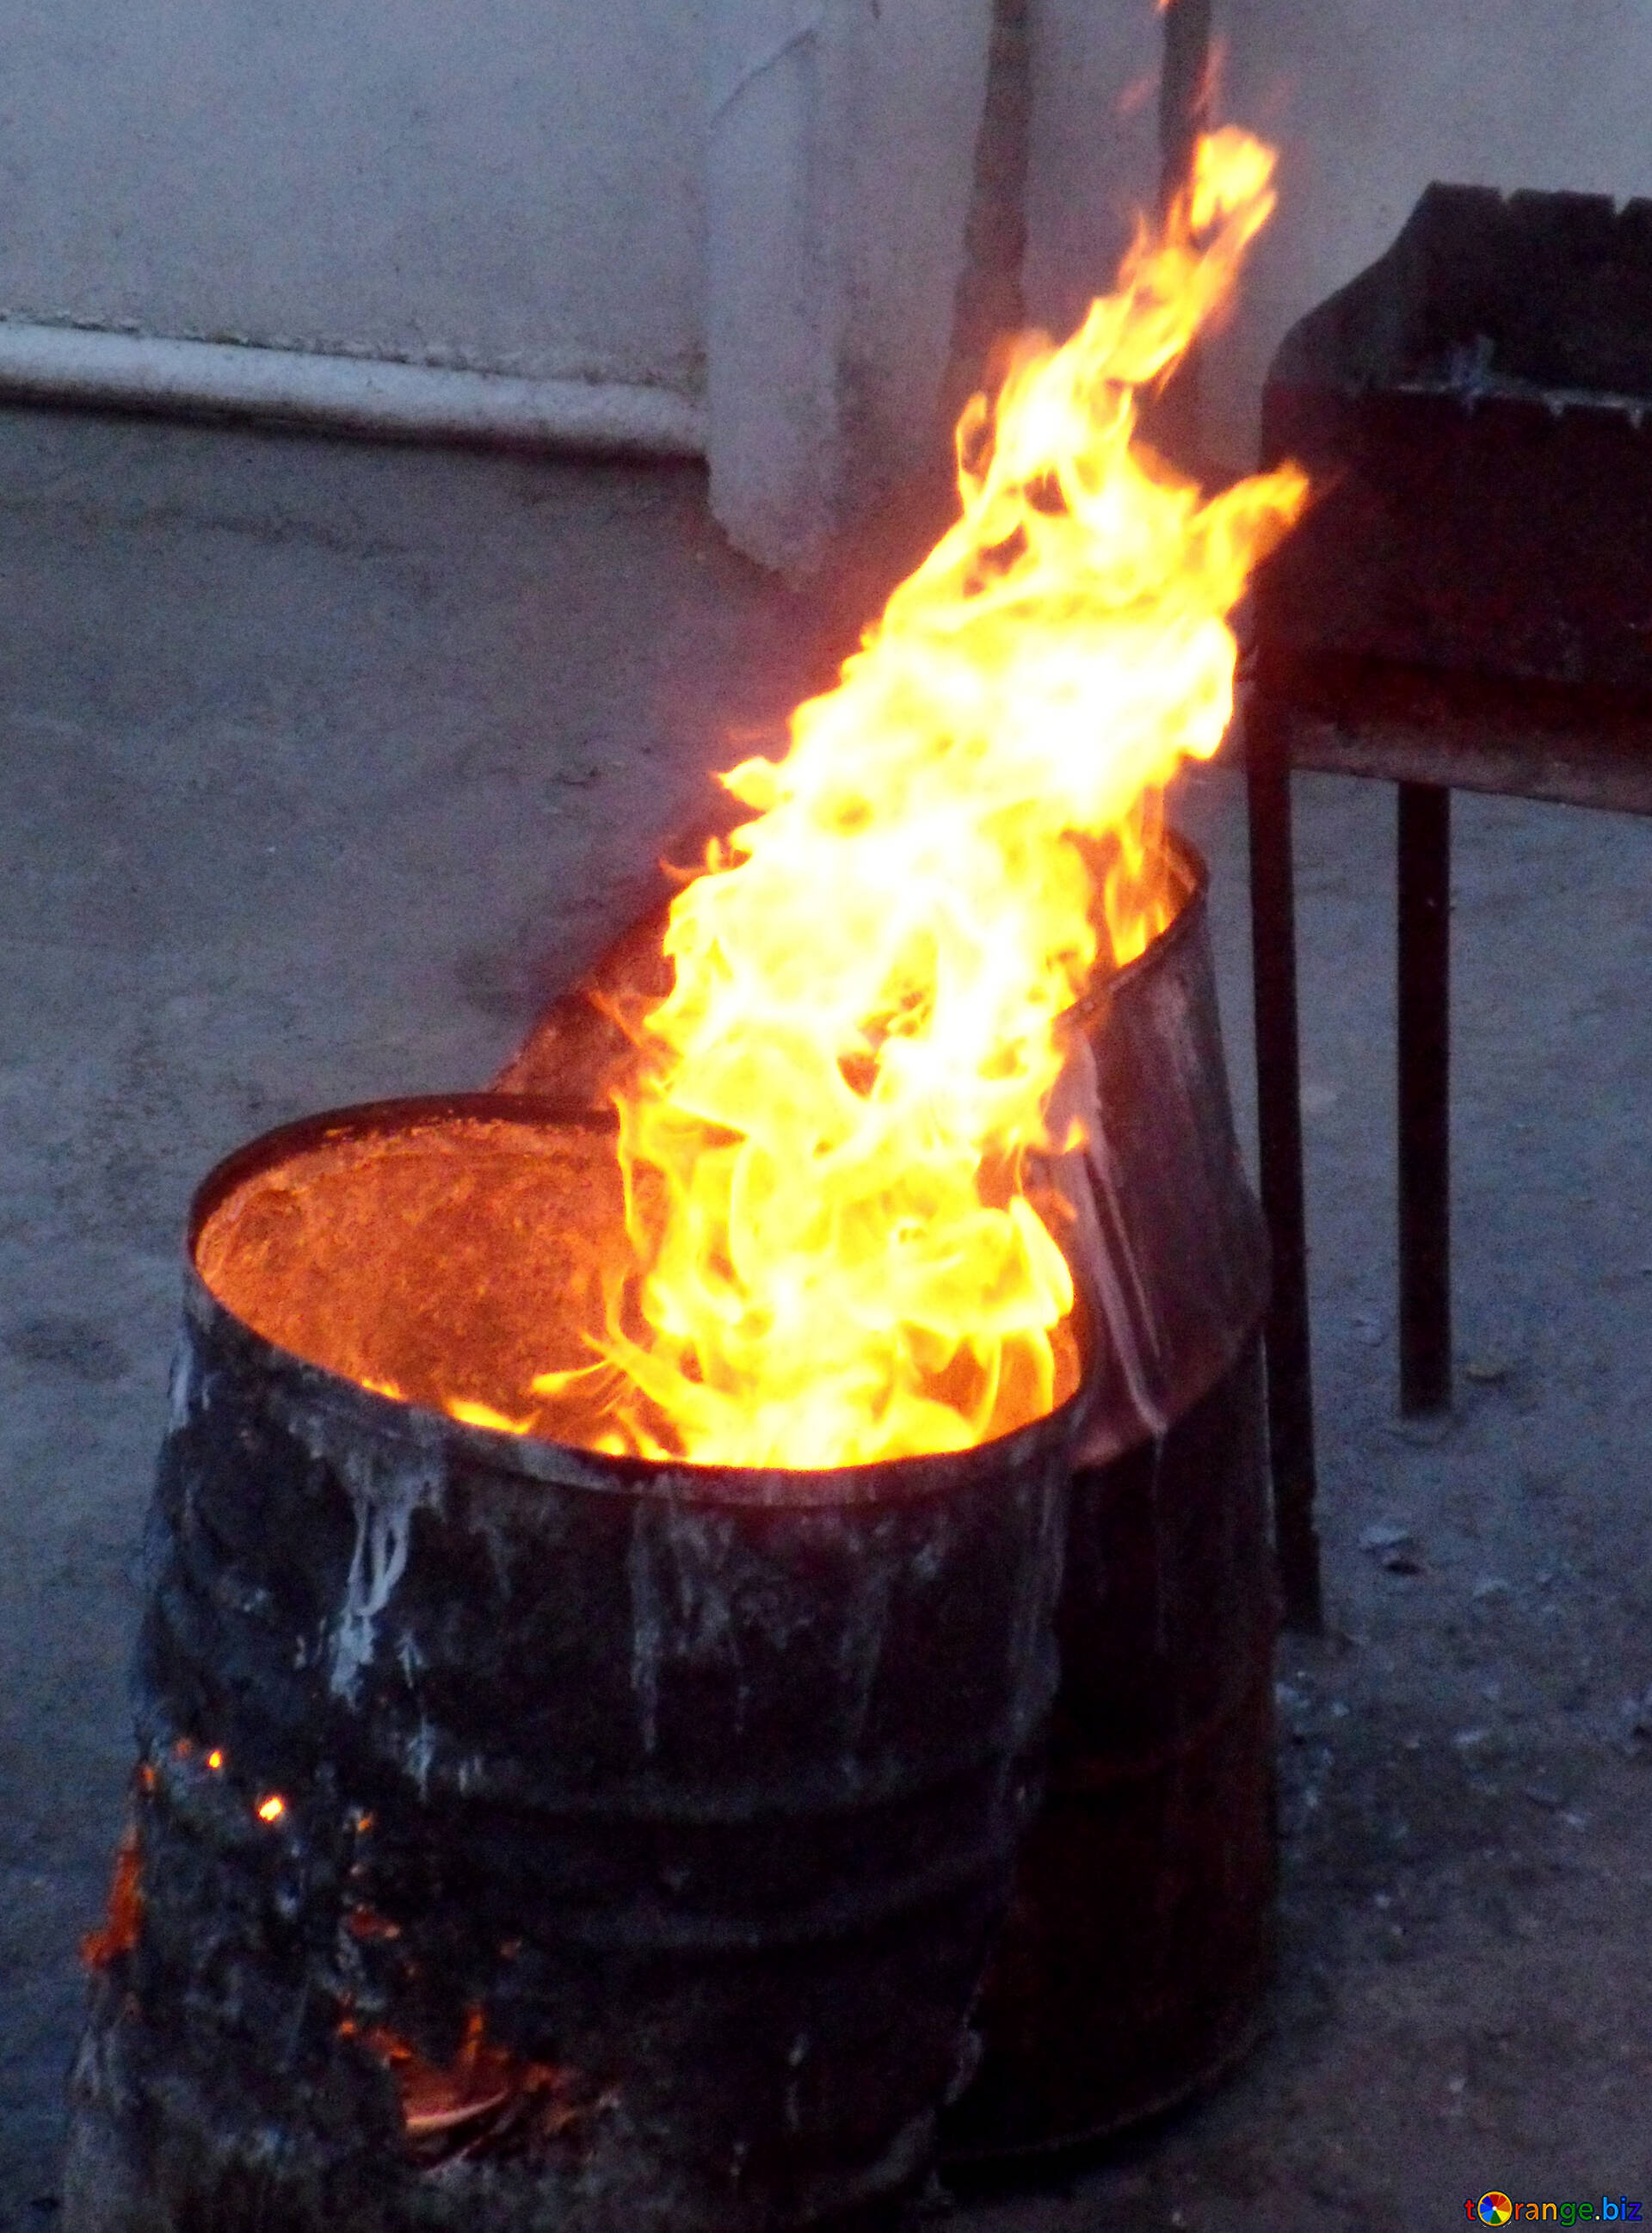 https://torange.biz/photo/13/HD/barrel-fire-night-burning-13549.jpg